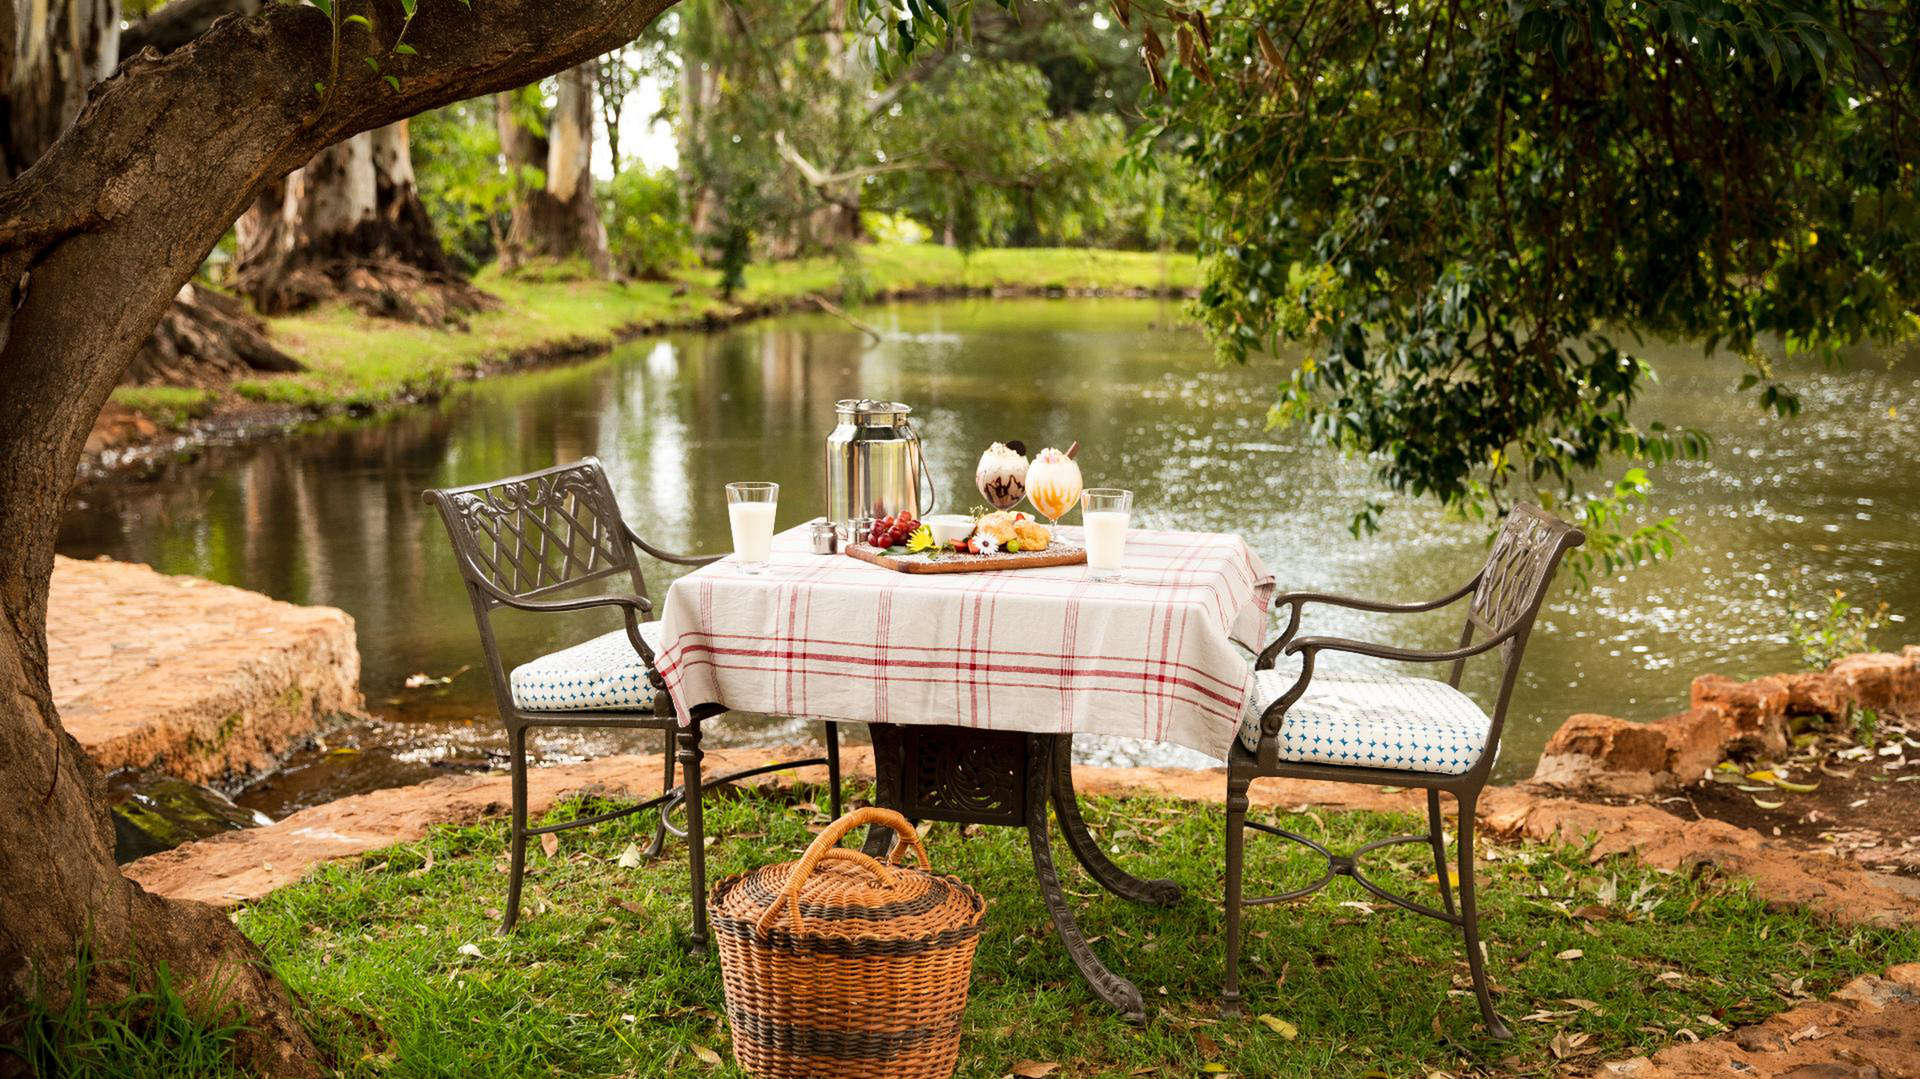 Mesa junto al agua con comida y cesta de picnic